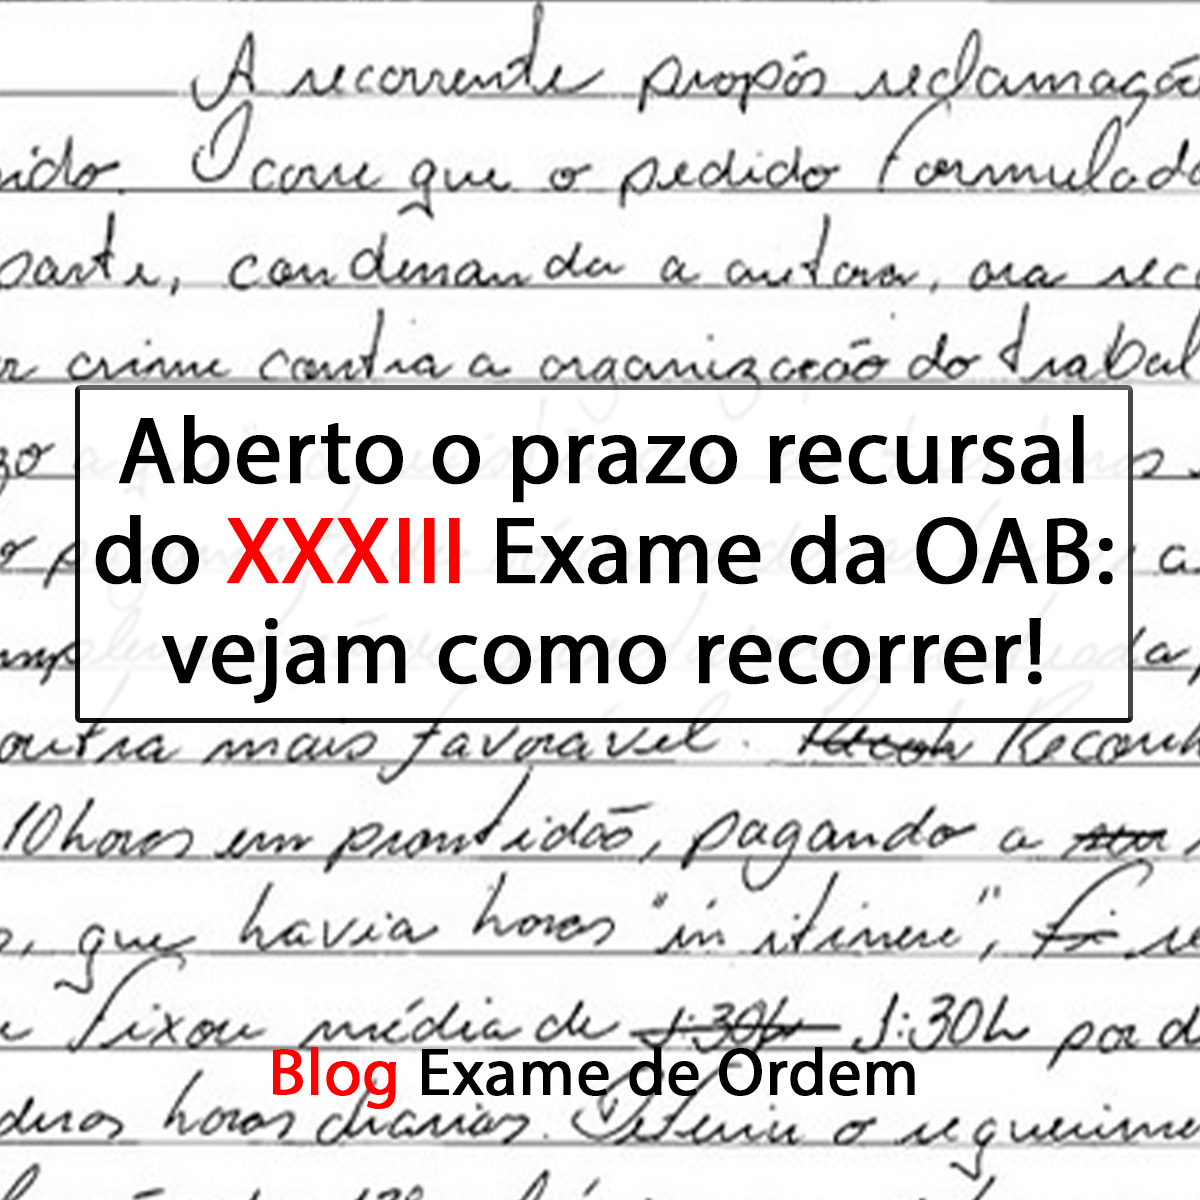 Aberto o prazo recursal do XXXIII Exame da OAB: vejam como recorrer!